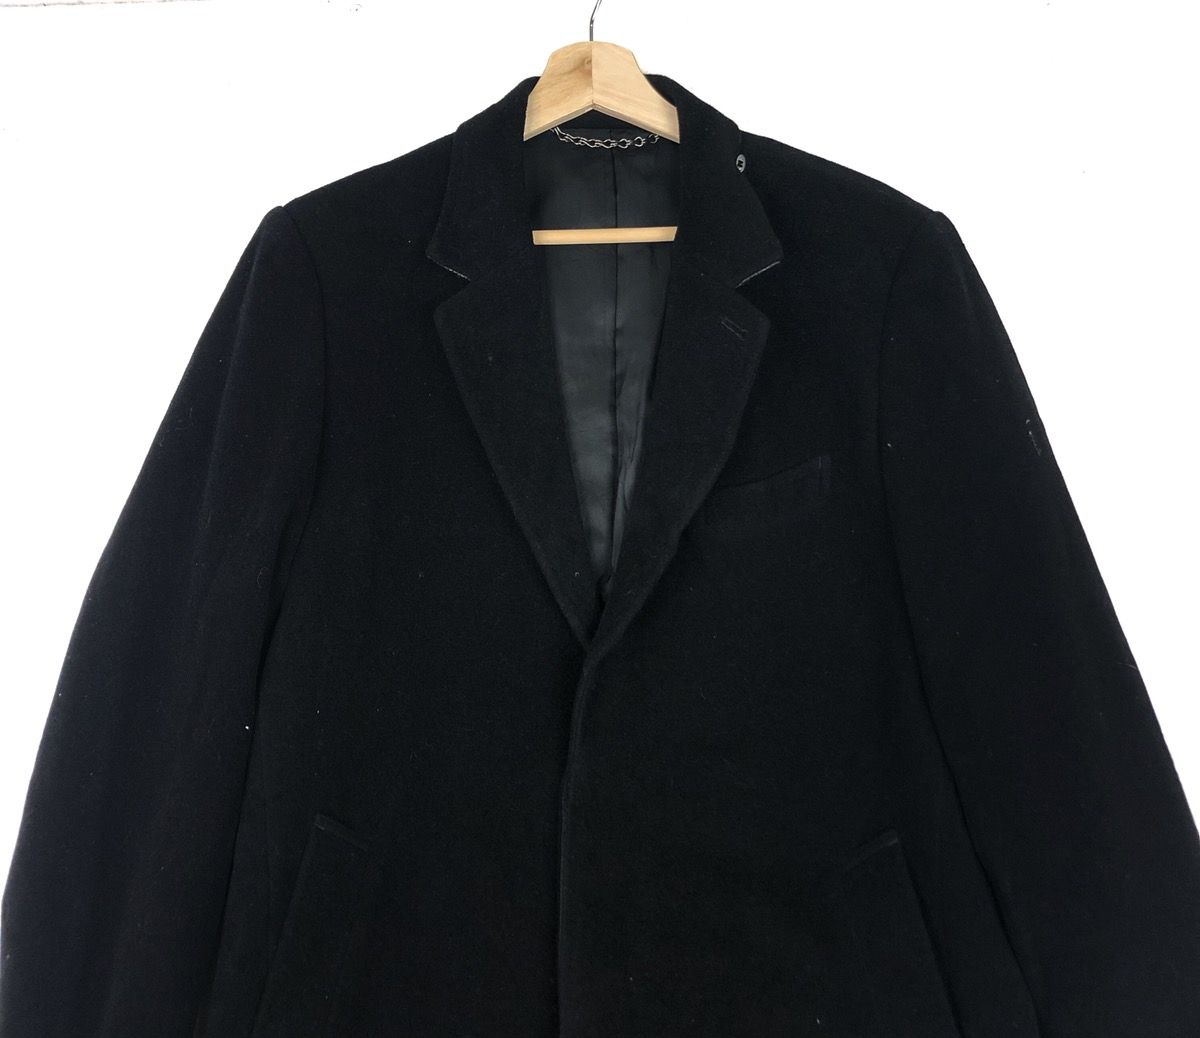 🔥MIHARAYASUHIRO Parka Long Trench Coat Jacket - 2